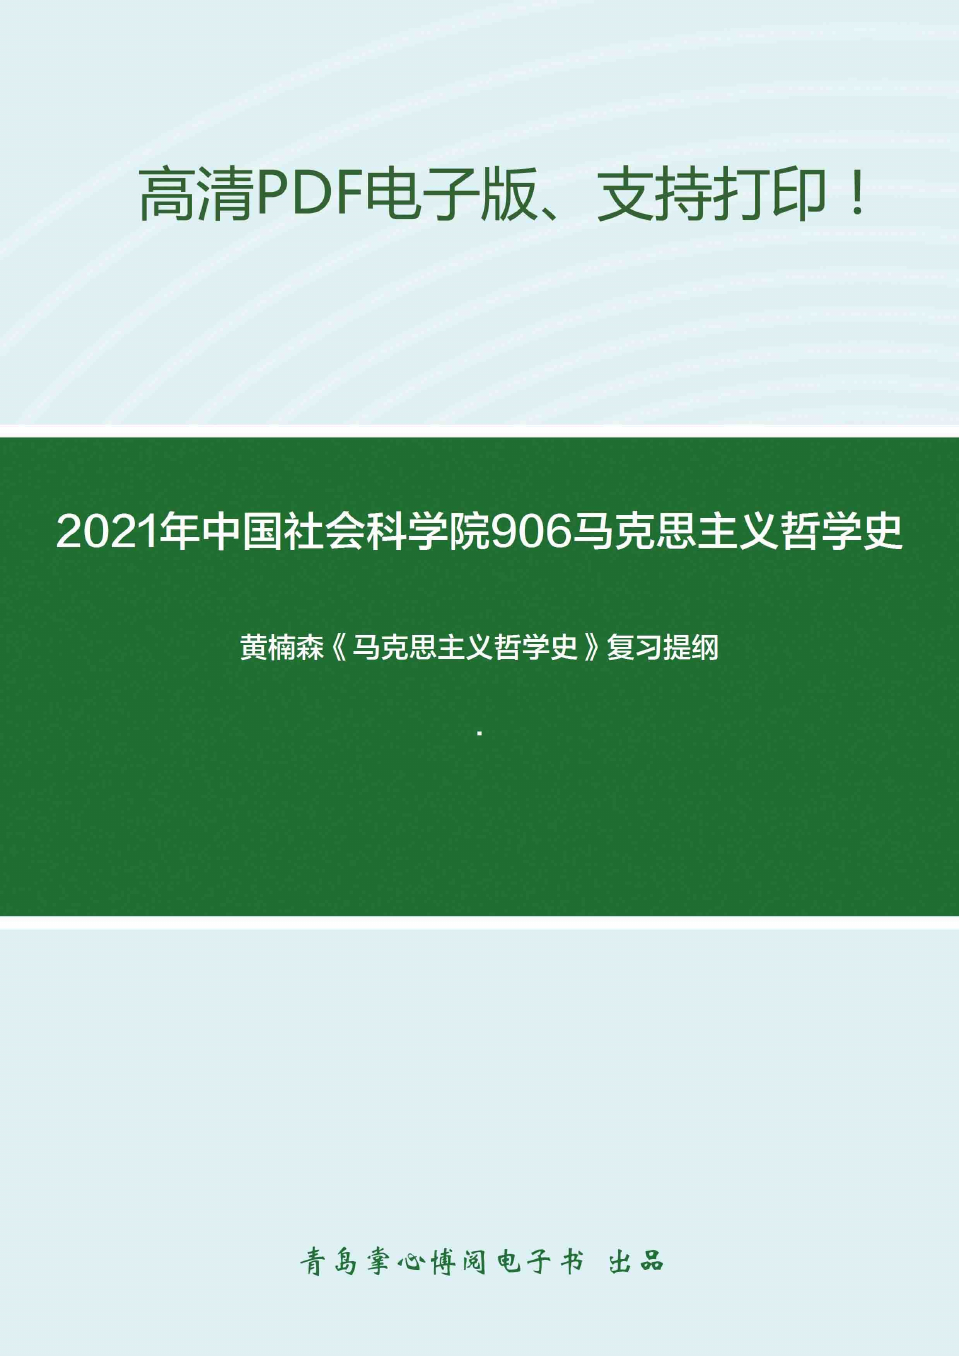 2021年中国社会科学院906马克思主义哲学史考研精品资料之黄楠森《马克思主义哲学史》复习提纲